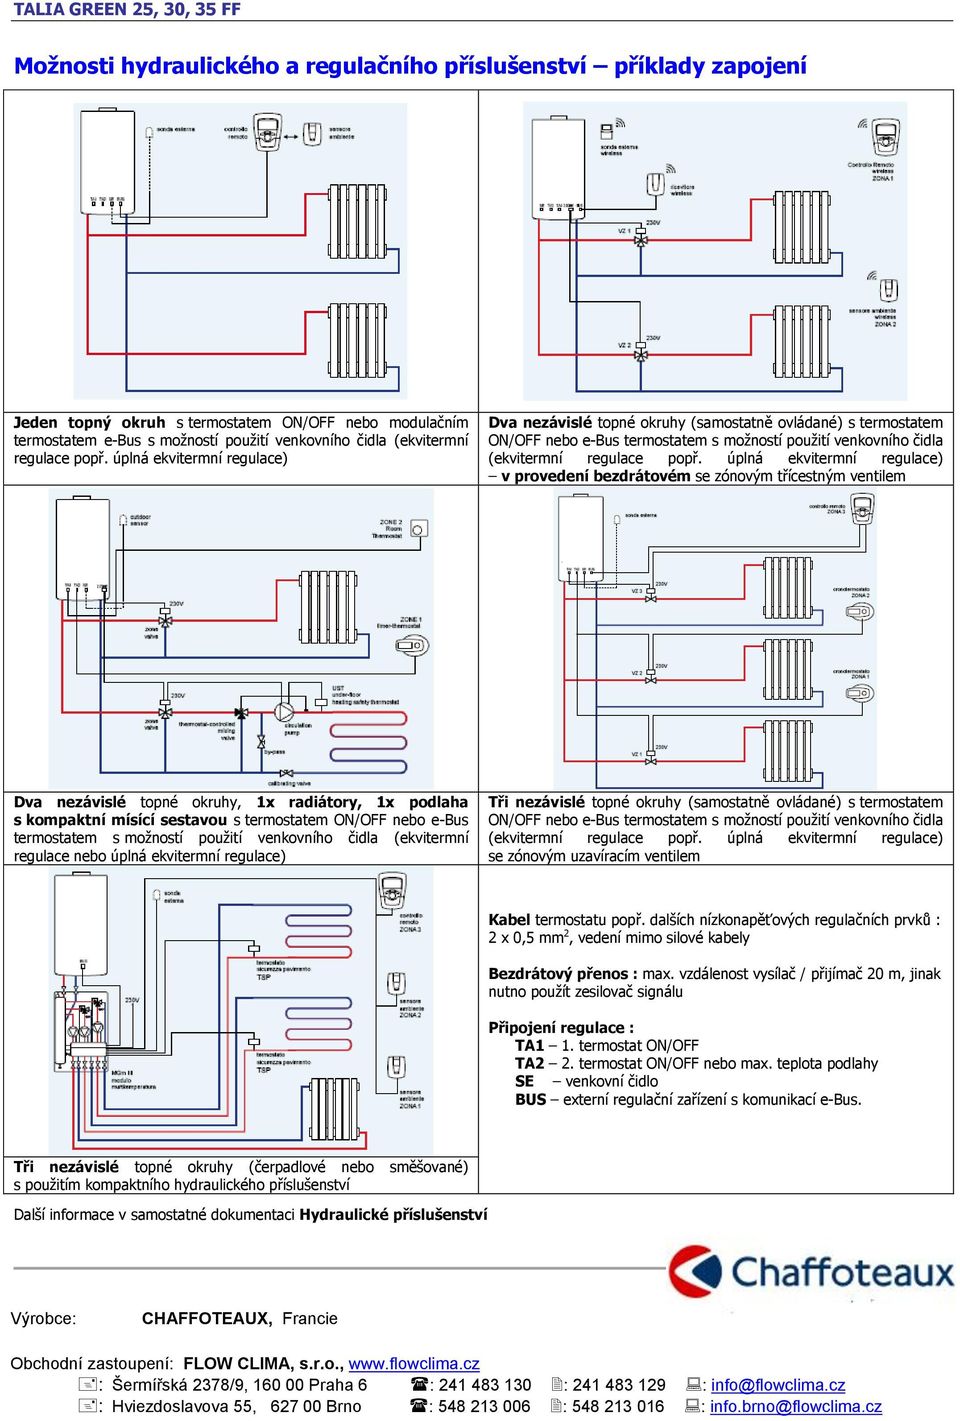 úplná ekvitermní regulace) v provedení bezdrátovém se zónovým třícestným ventilem Dva nezávislé topné okruhy, 1x radiátory, 1x podlaha s kompaktní mísící sestavou s termostatem ON/OFF nebo e-bus